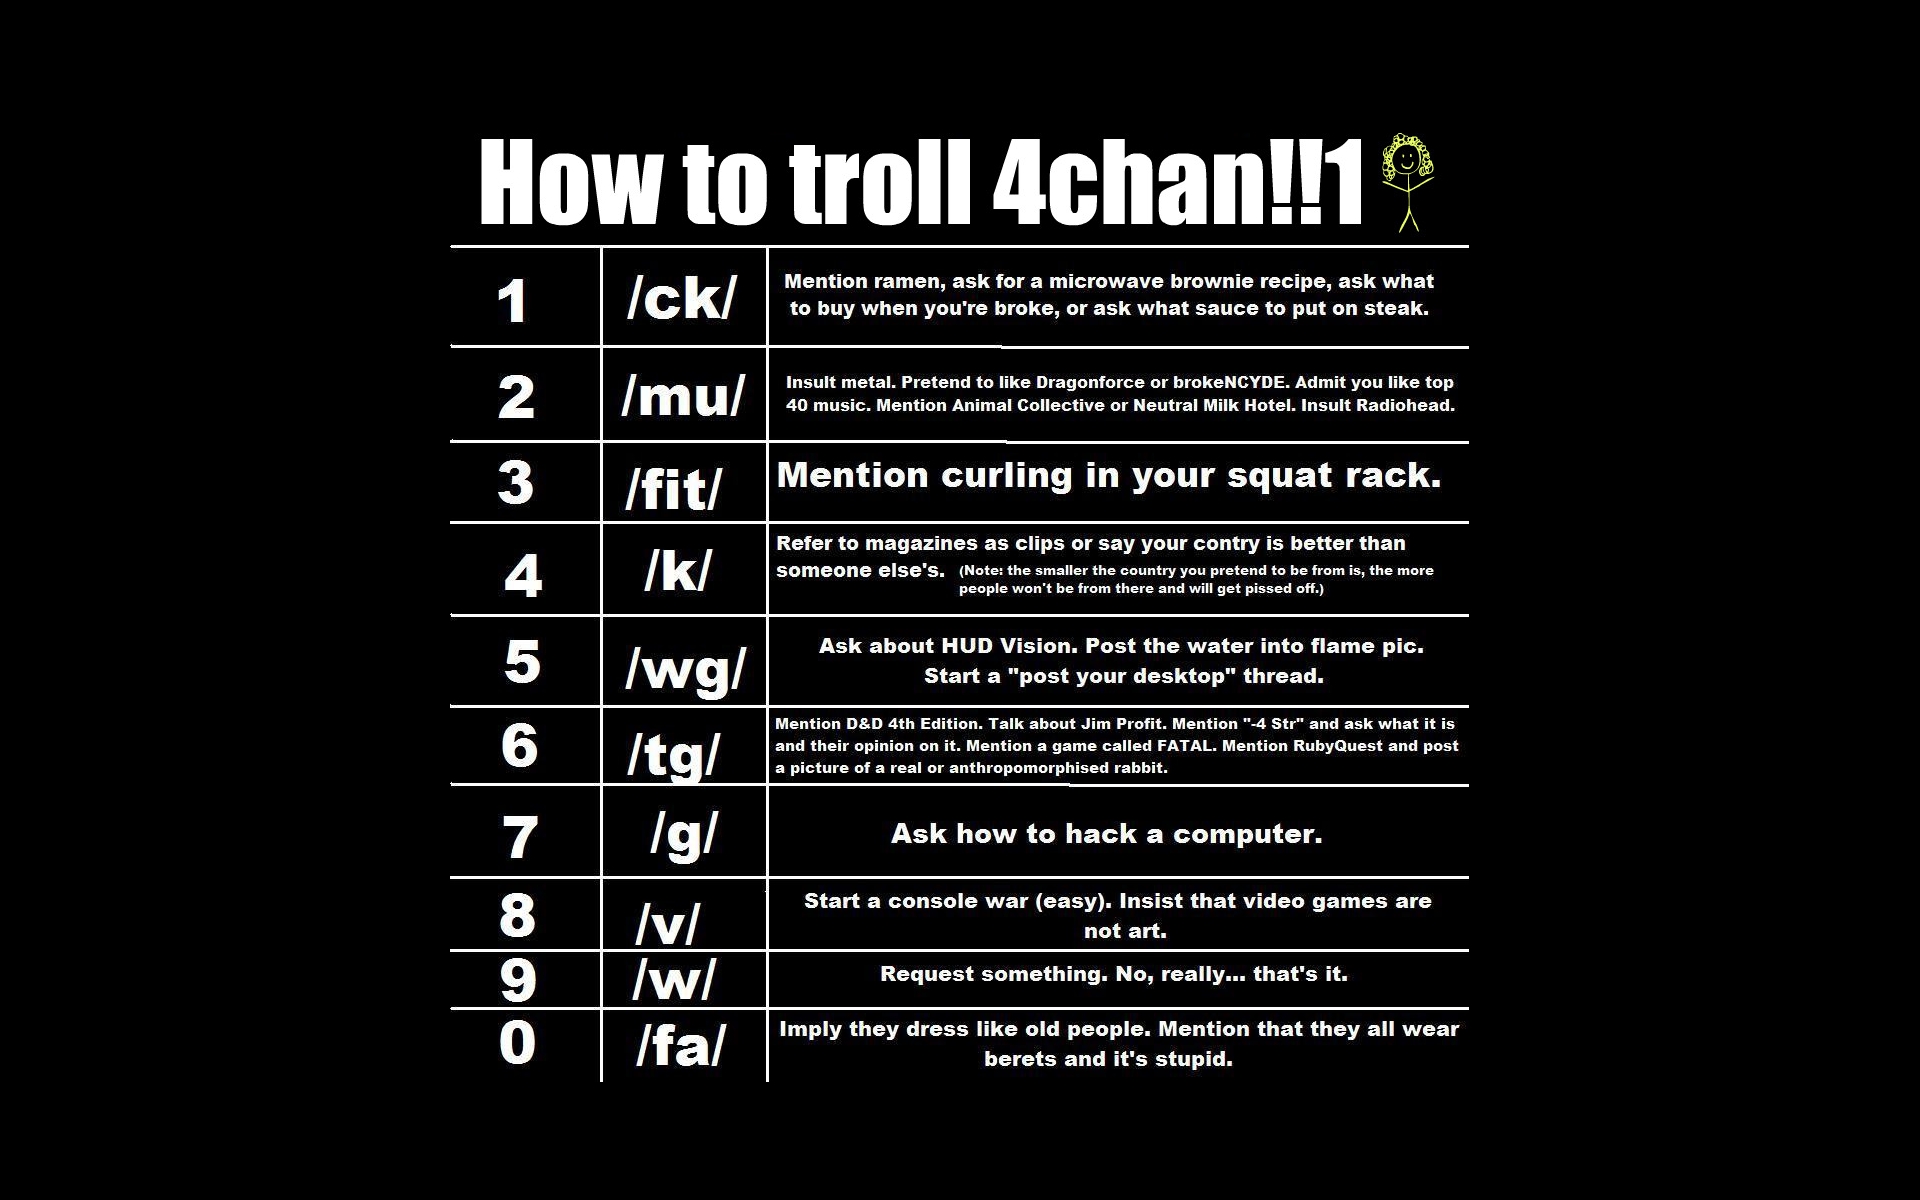 text, monochrome, how-tos, trolls, 4chan - desktop wallpaper